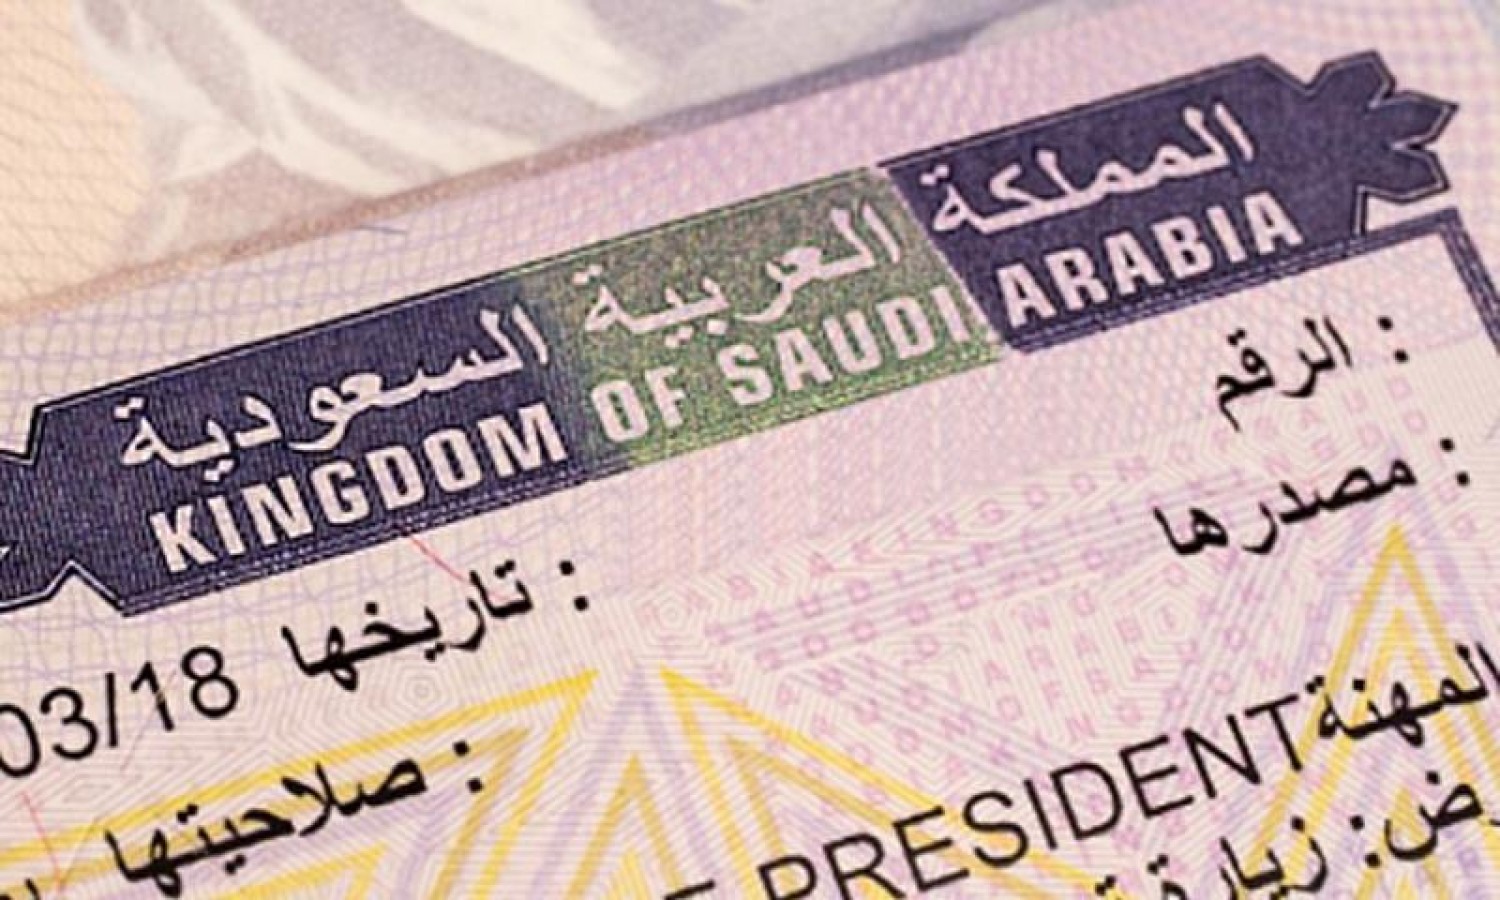 تأشيرة زيارة أعمال السعودية 2020